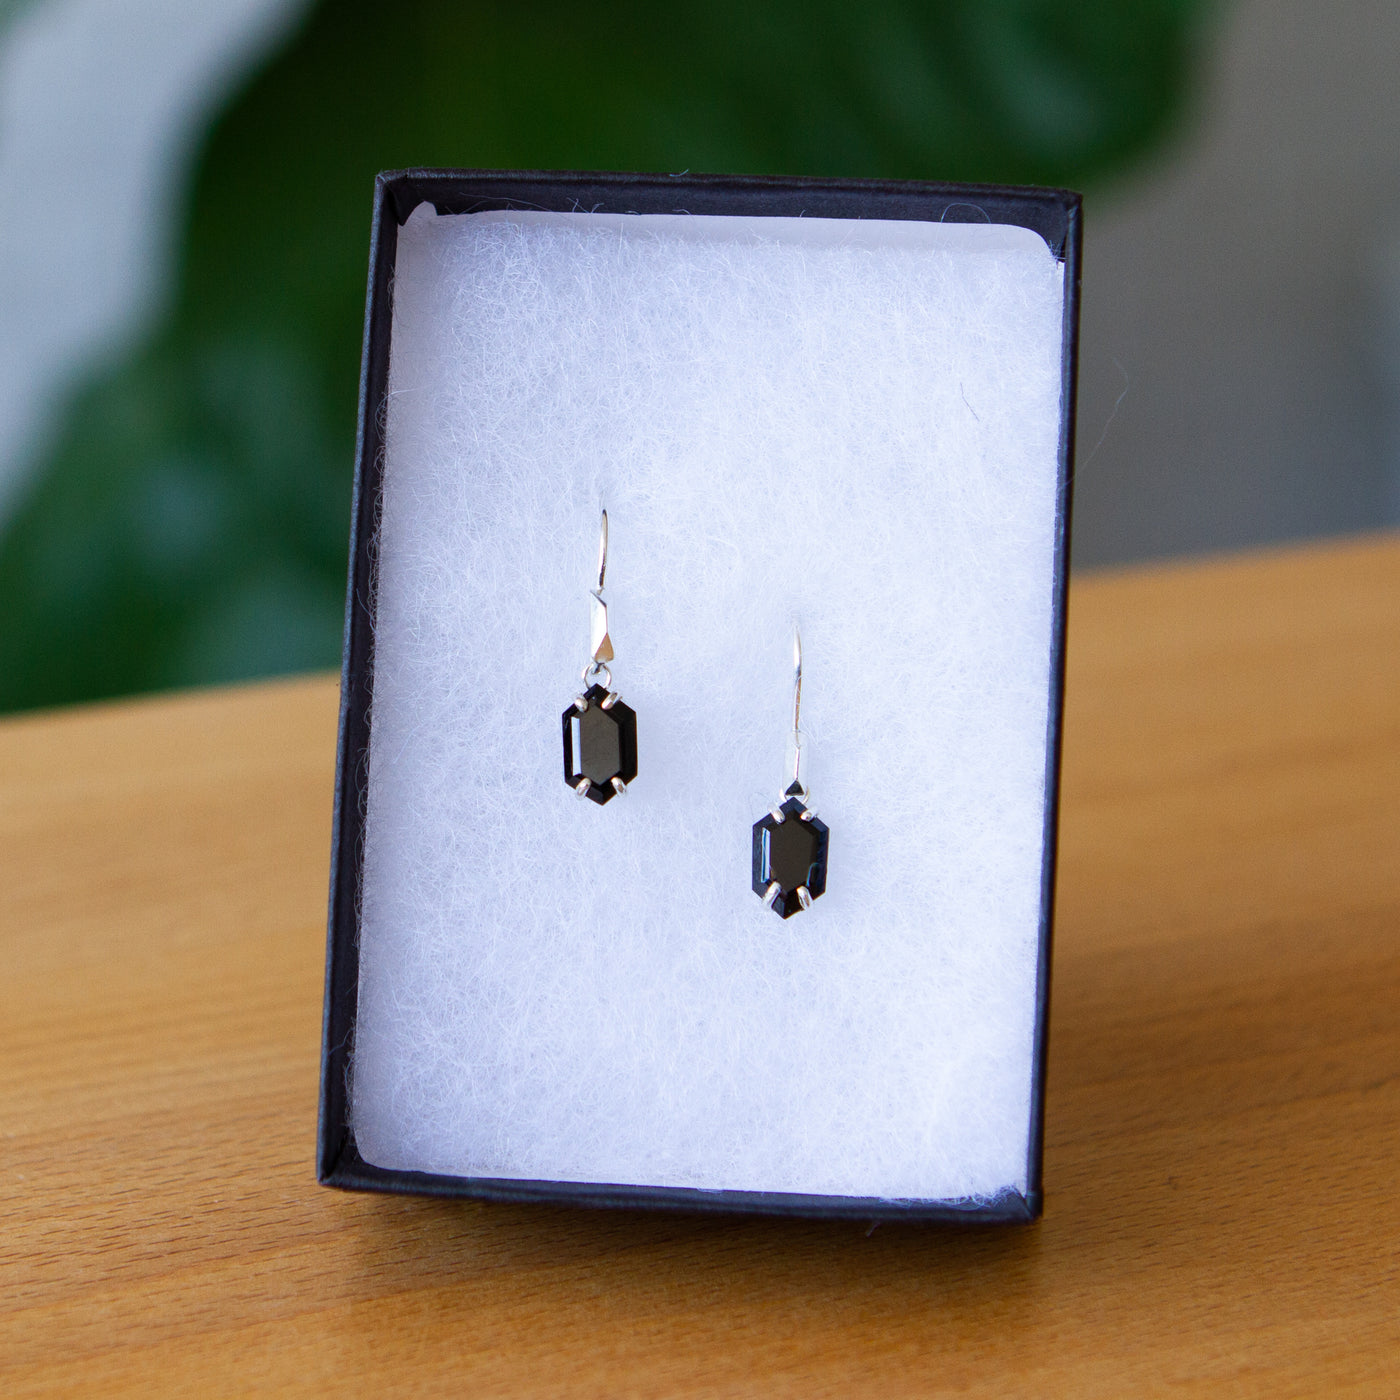 Eloise Black Garnet Earrings in Silver packaged in a jewelry box